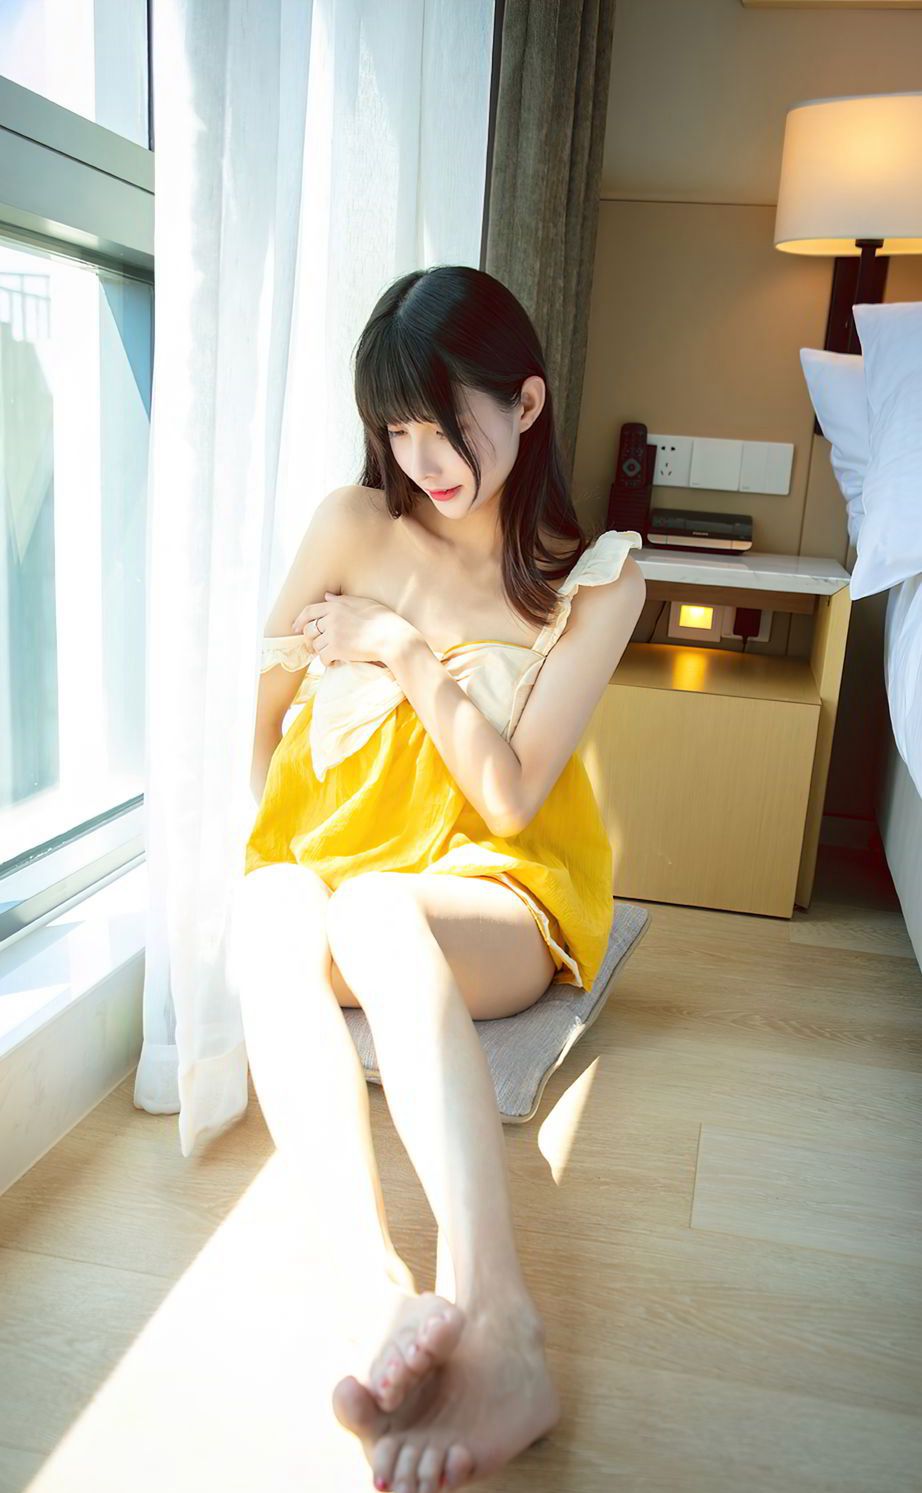 甜到心窝里的可爱美女猫猫性感吊带黄裙居家床上温柔迷人写真图集套图10